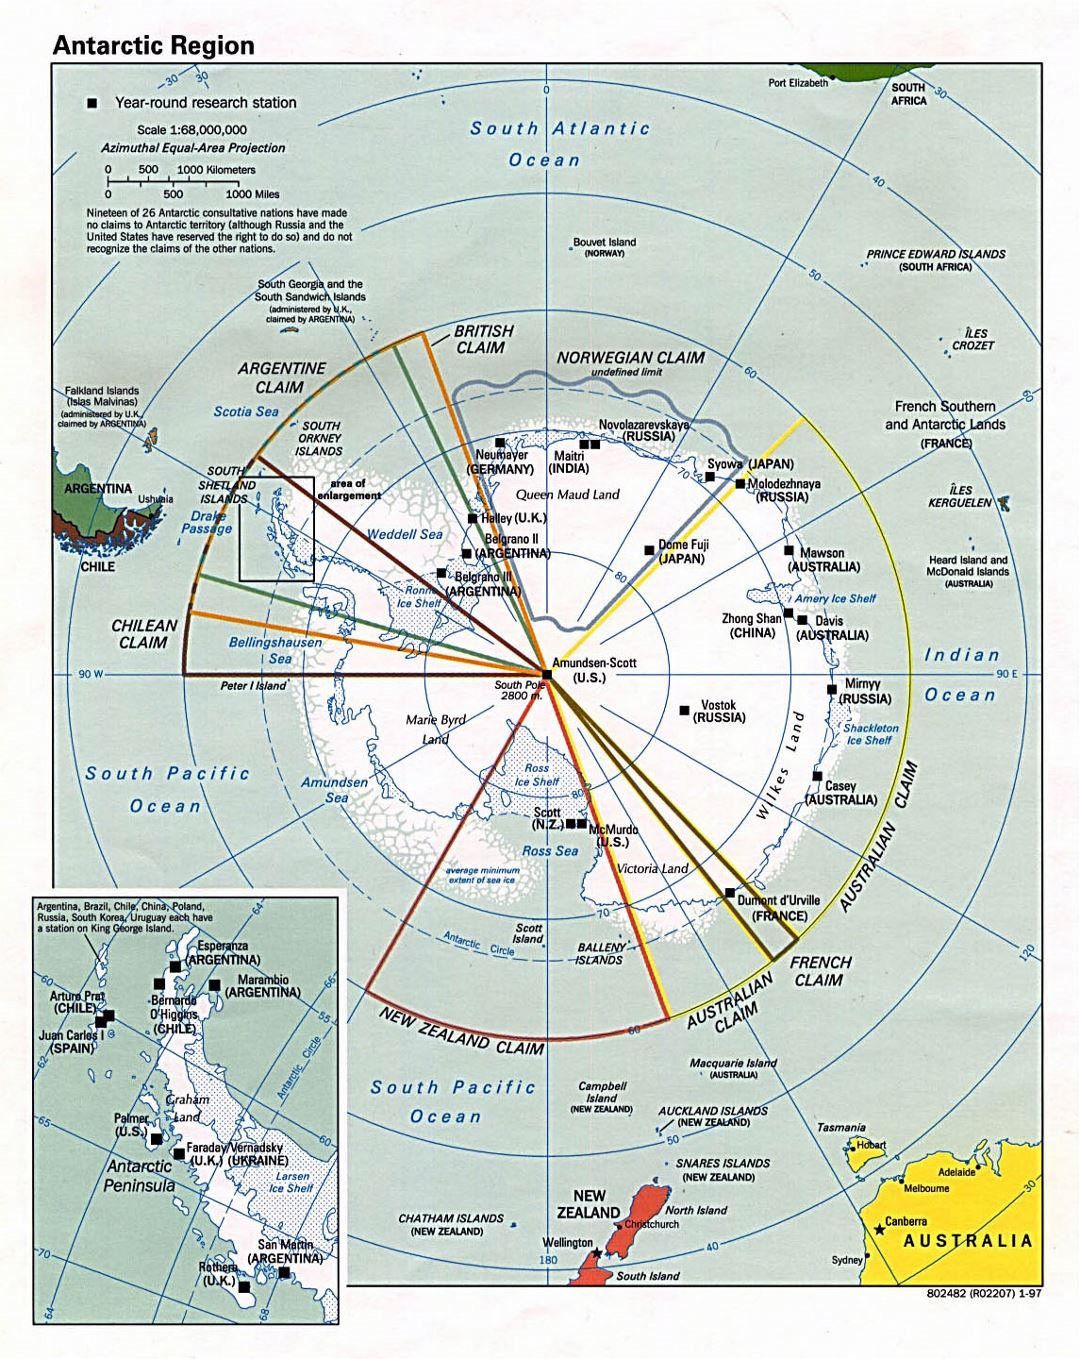 Mapa grande de la Región Antártica - 1997